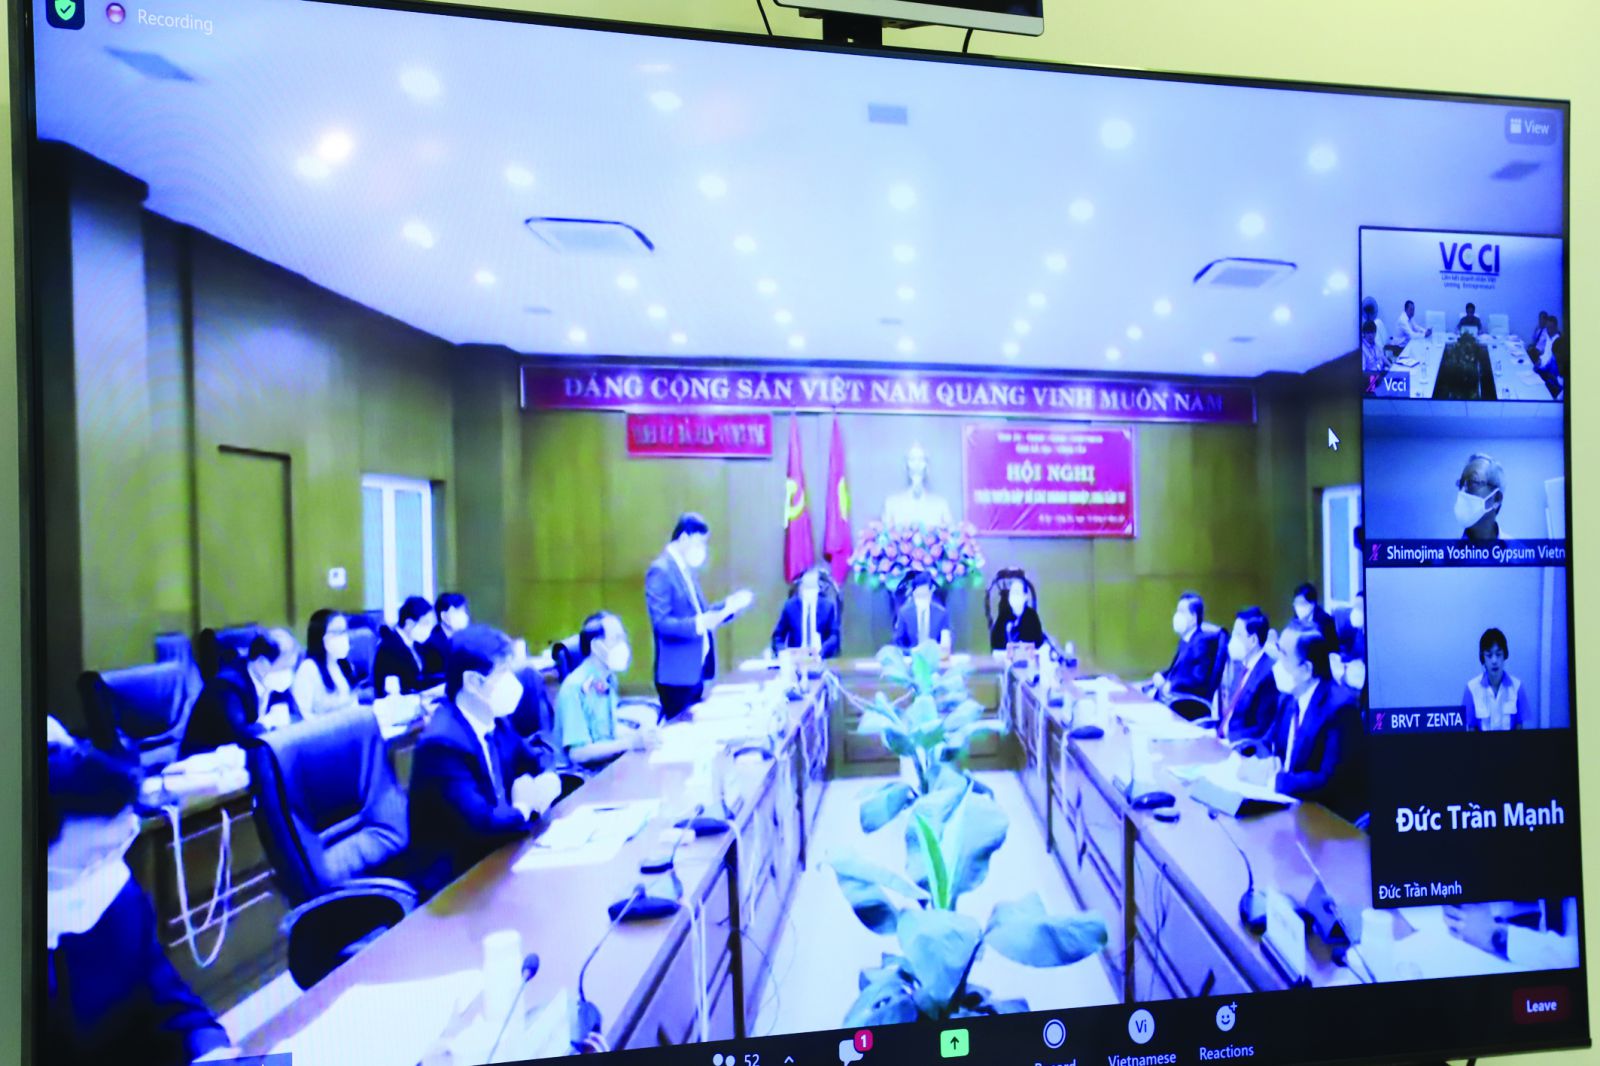  Hội nghị trực tuyến gặp gỡ với các hiệp hội, doanh nghiệp nhà đầu tư của UBND tỉnh Bà Rịa - Vũng Tàu để tháo gỡ khó khăn cho doanh nghiệp trong tình hình hiện nay.p/Ảnh: Bảo Loan